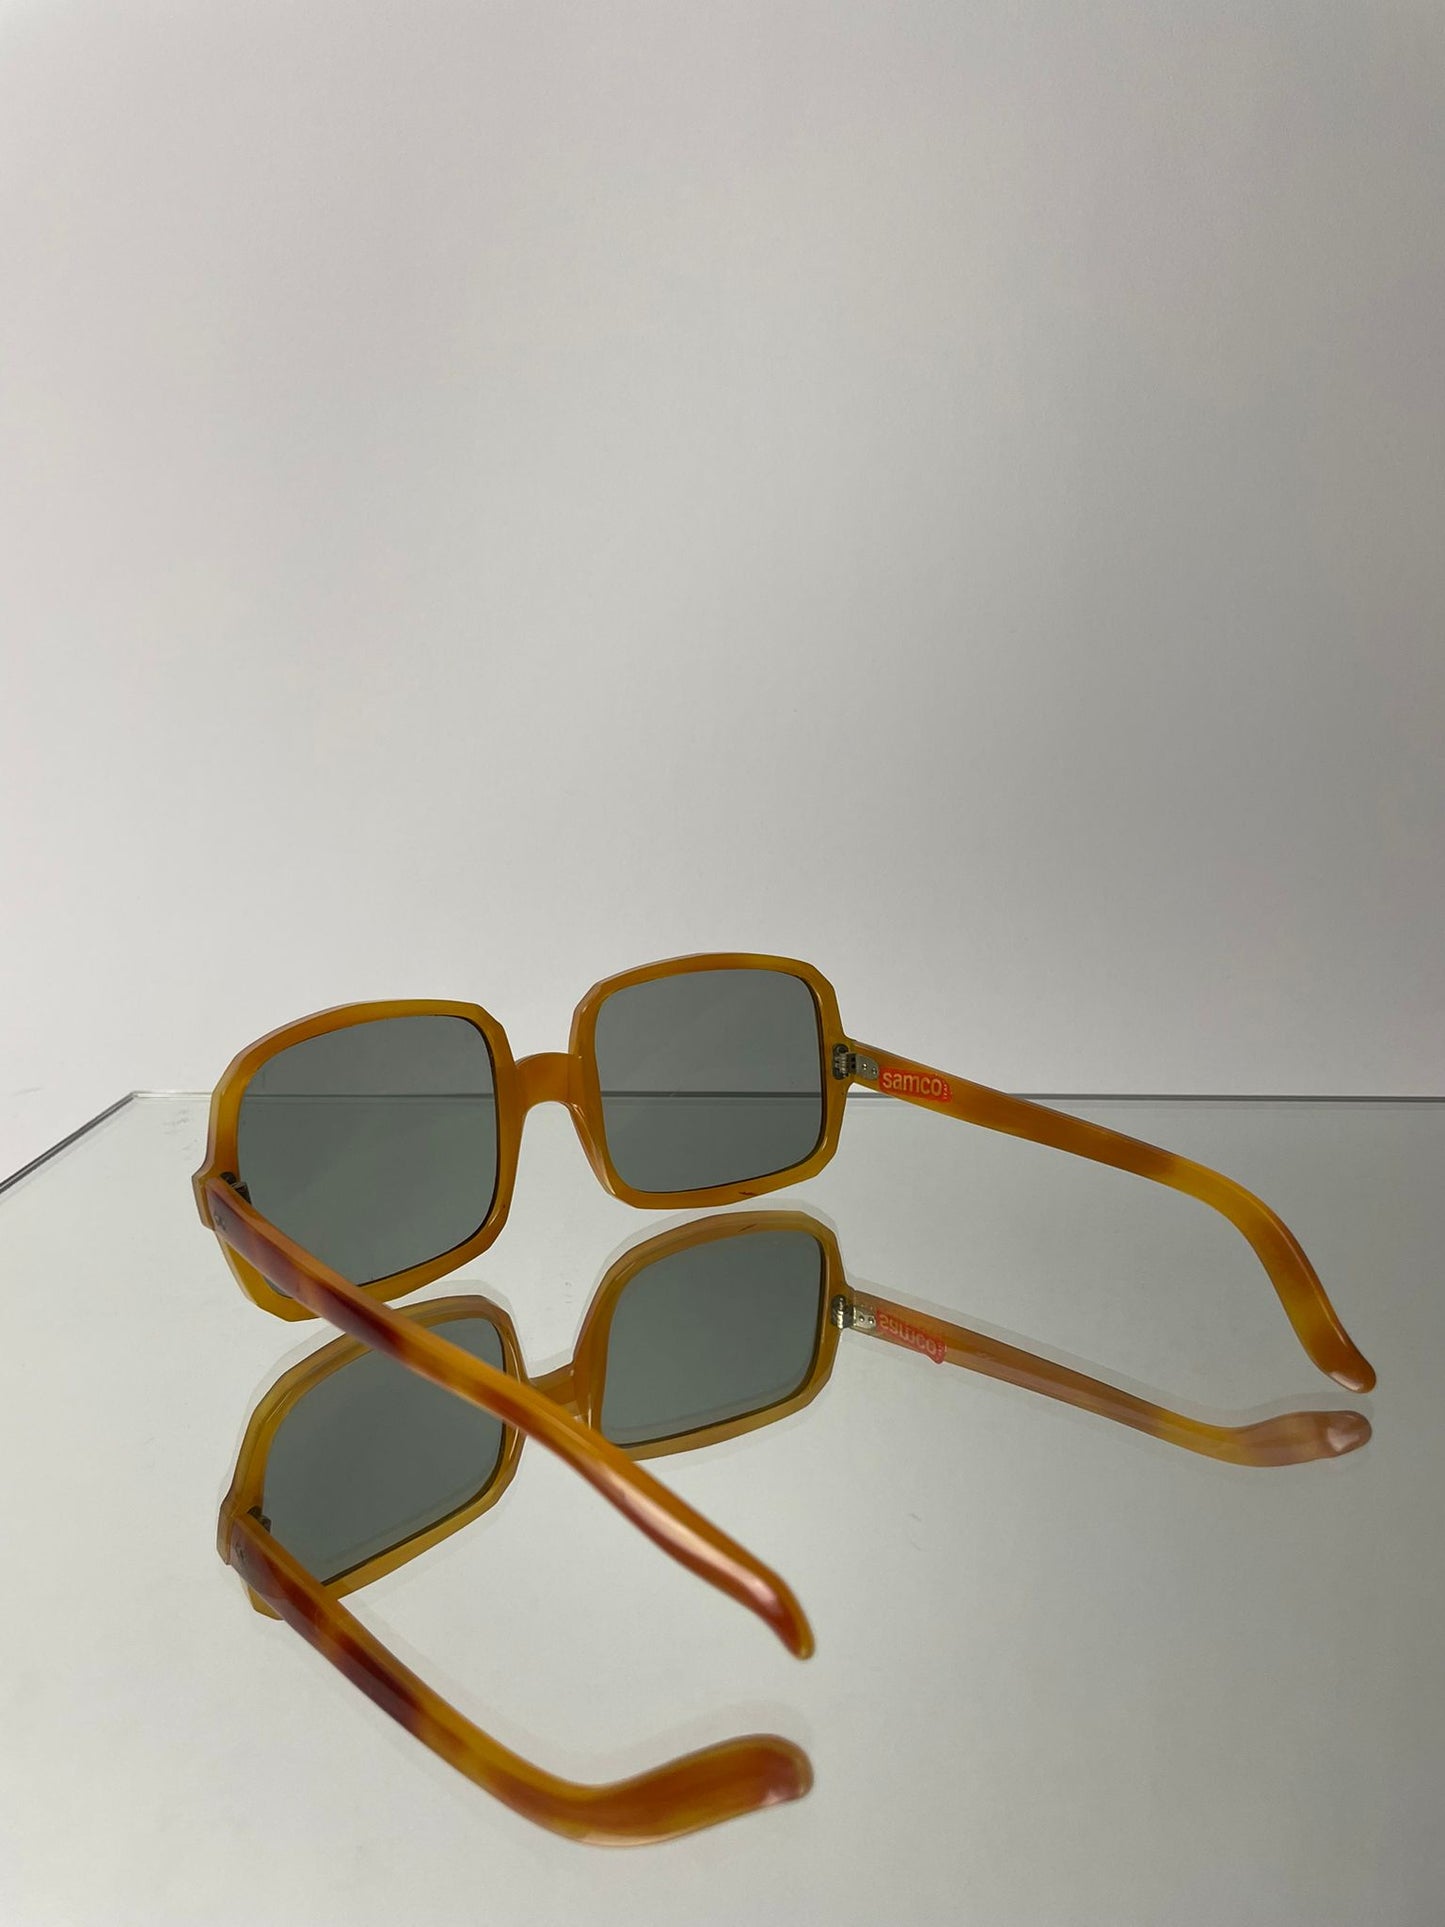 Samco Sunglasses 1970